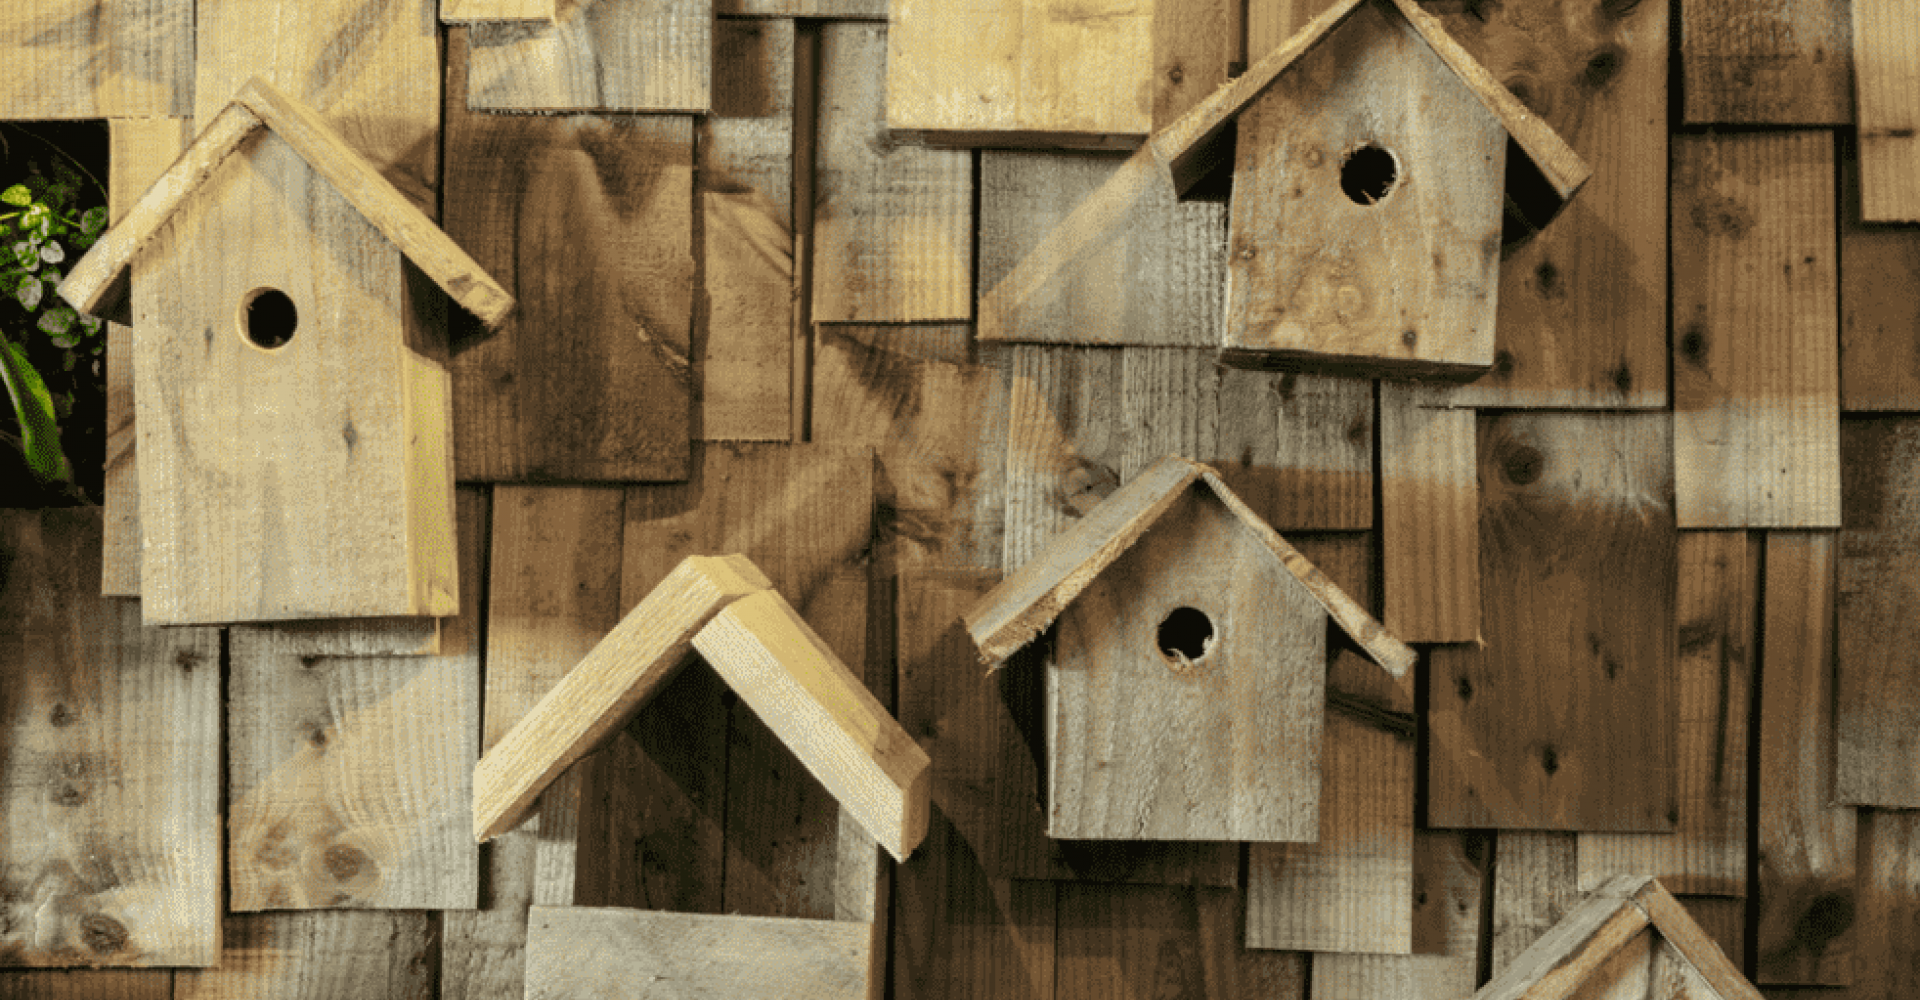 Treehouse Birdhouses